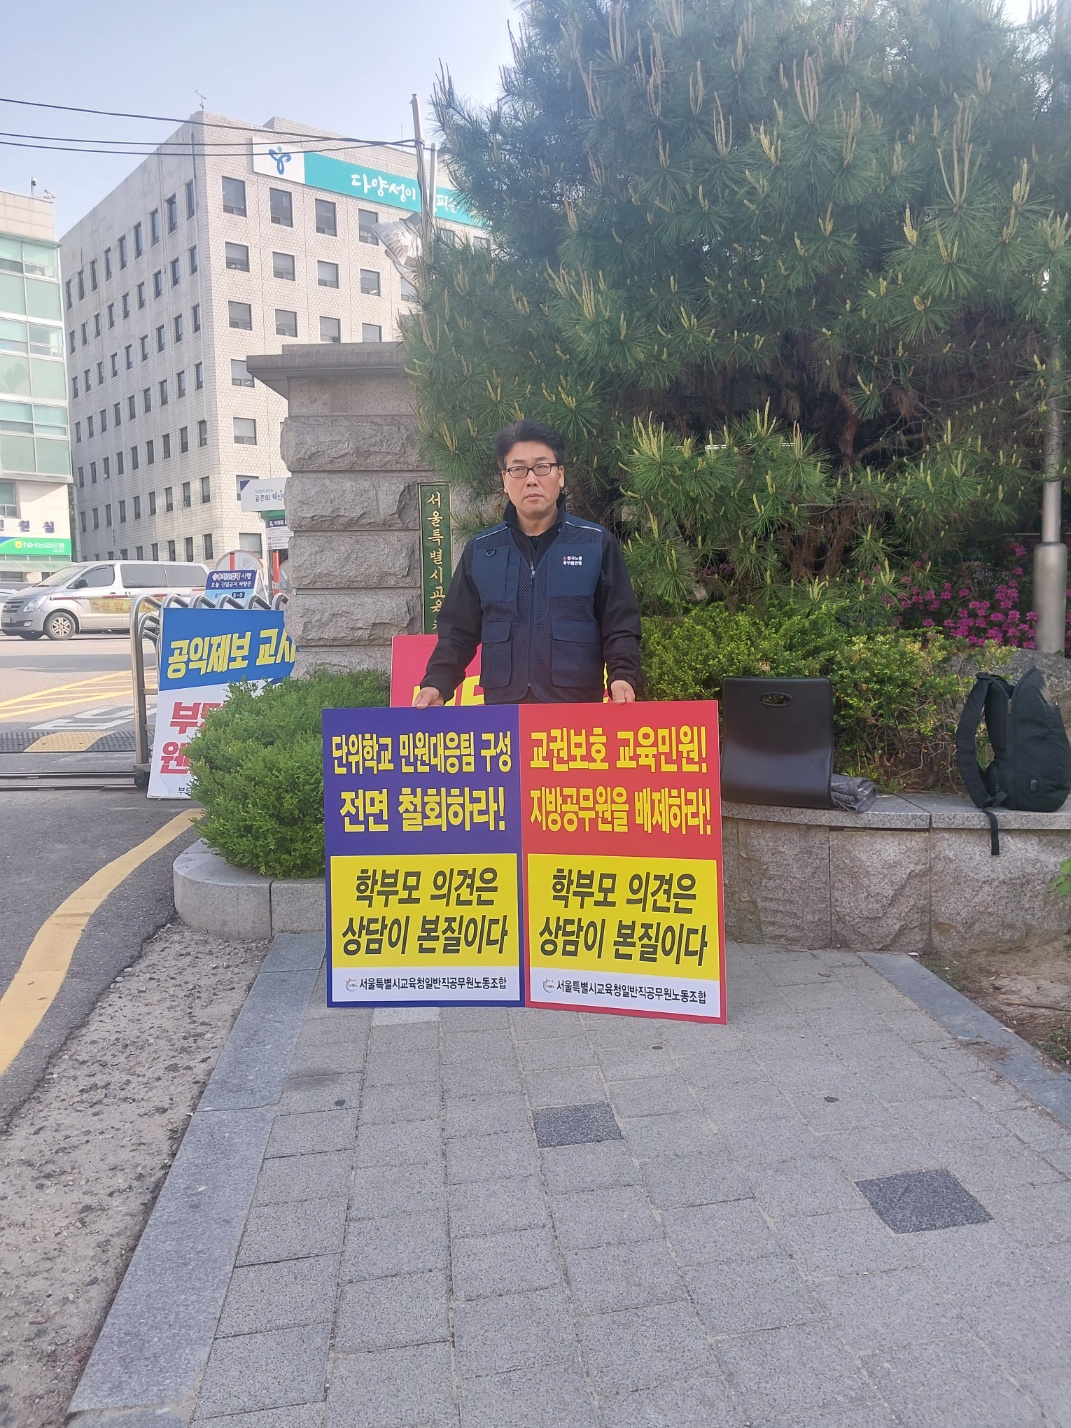 학교민원대응팀 일반직 구성 반대 연대 공동 1인 시위(24.4.19.금)-1일차